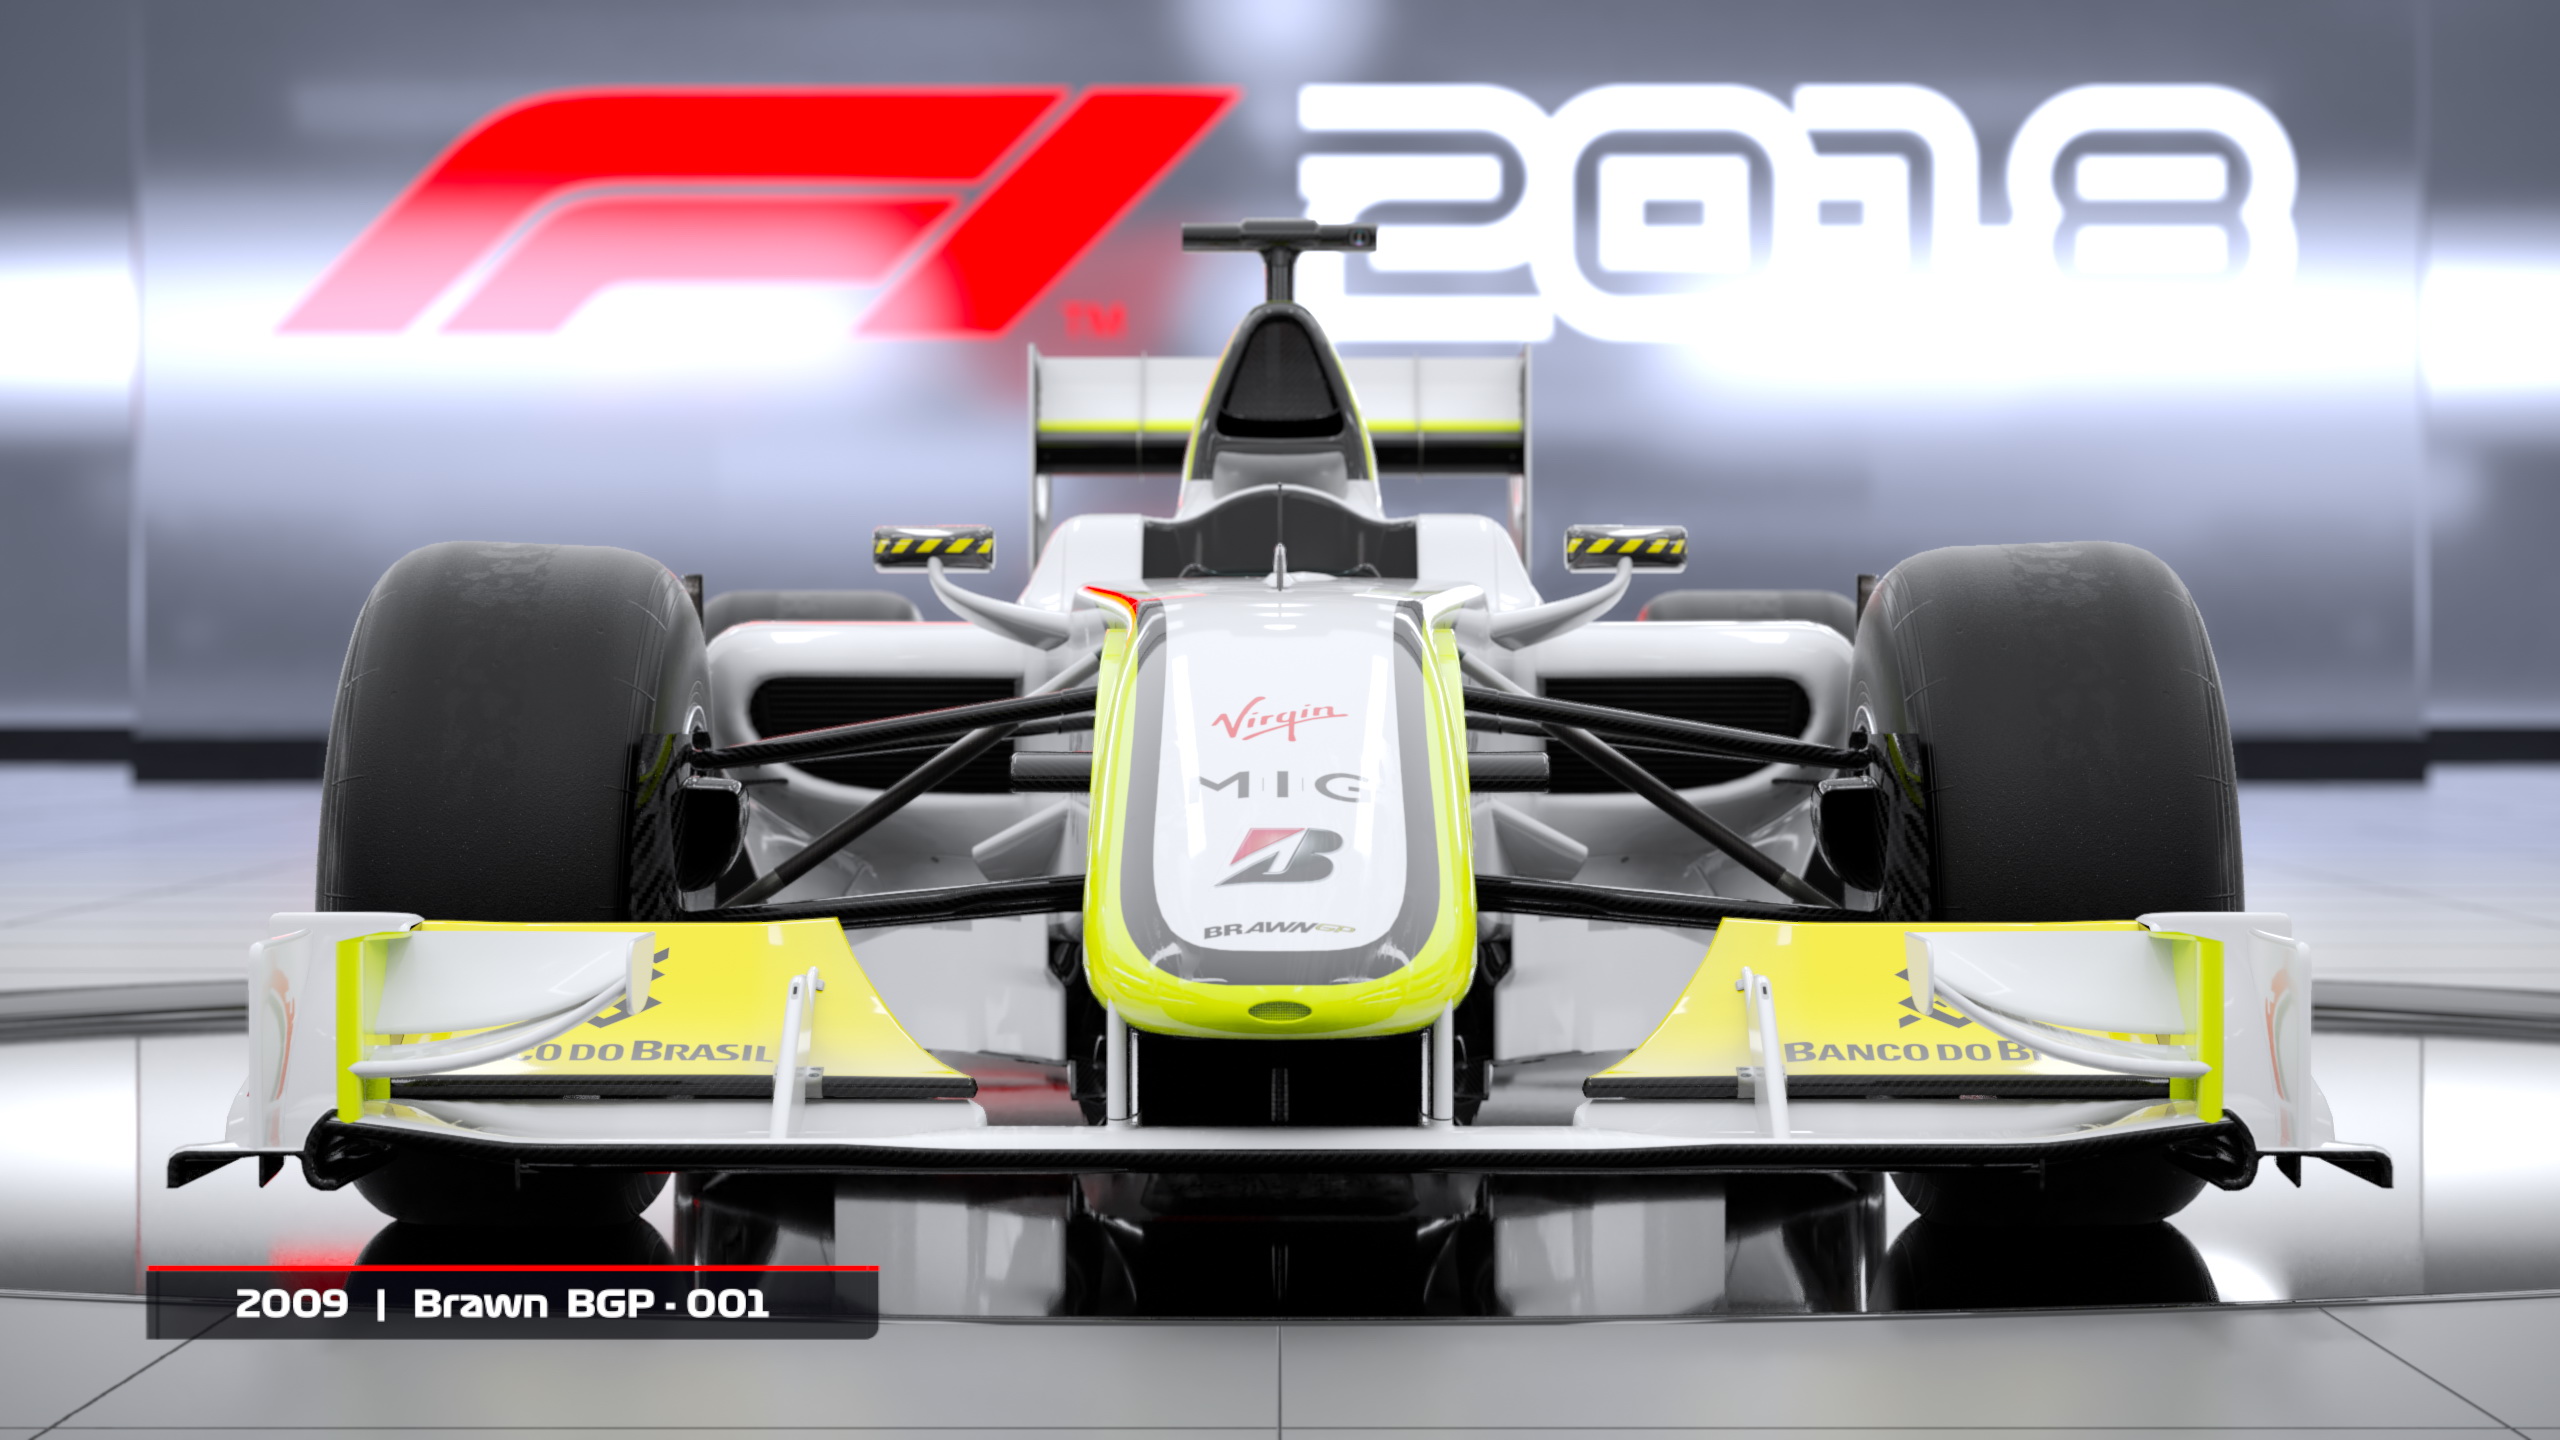 Los míticos Brawn GP y el Williams FW25 aparecerán en F1 2018. Revelada la campaña de reserva